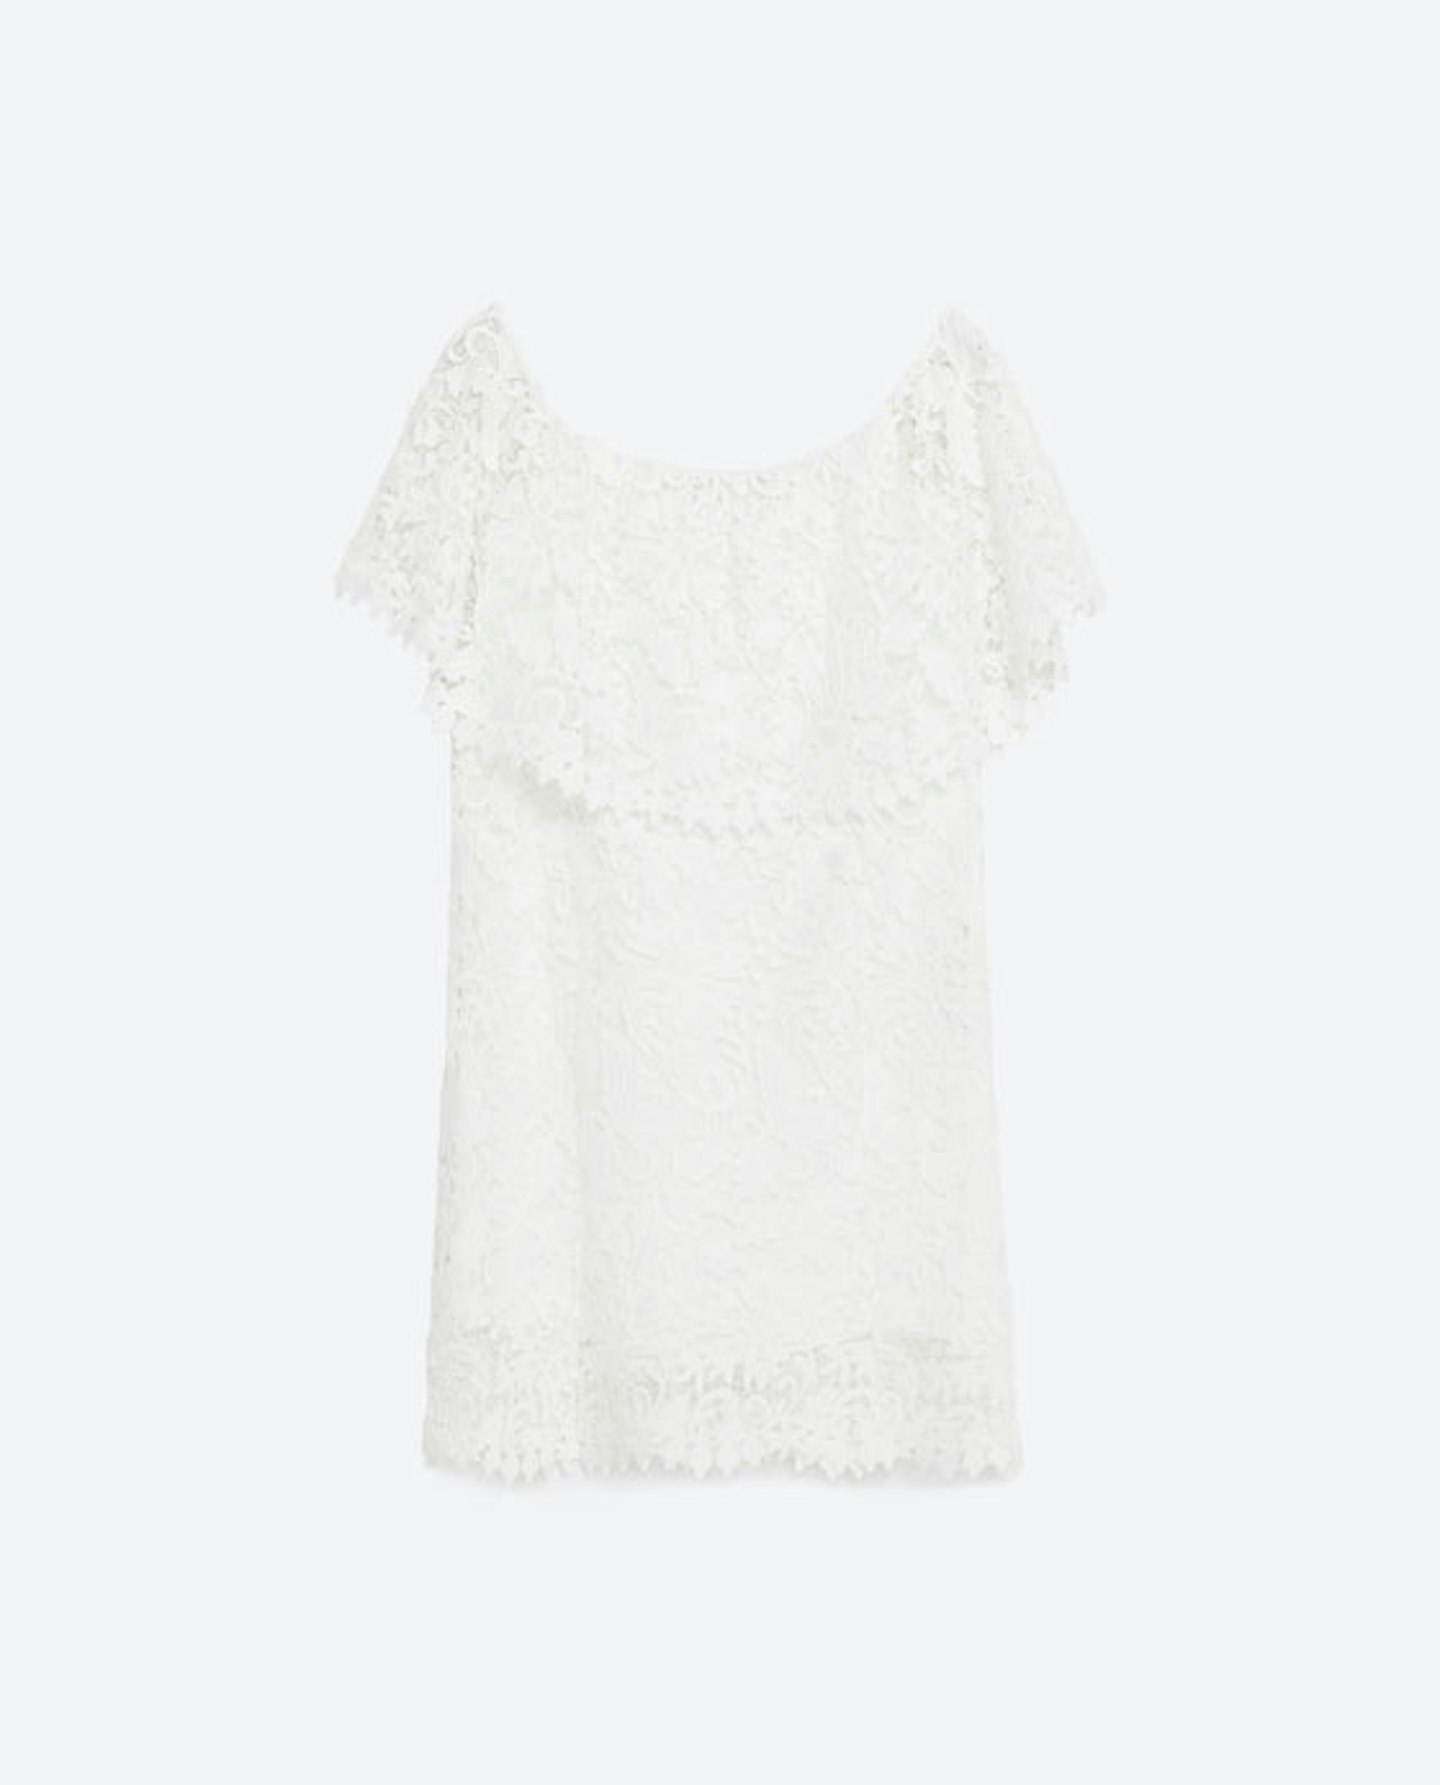 White Summer Dresses 2016